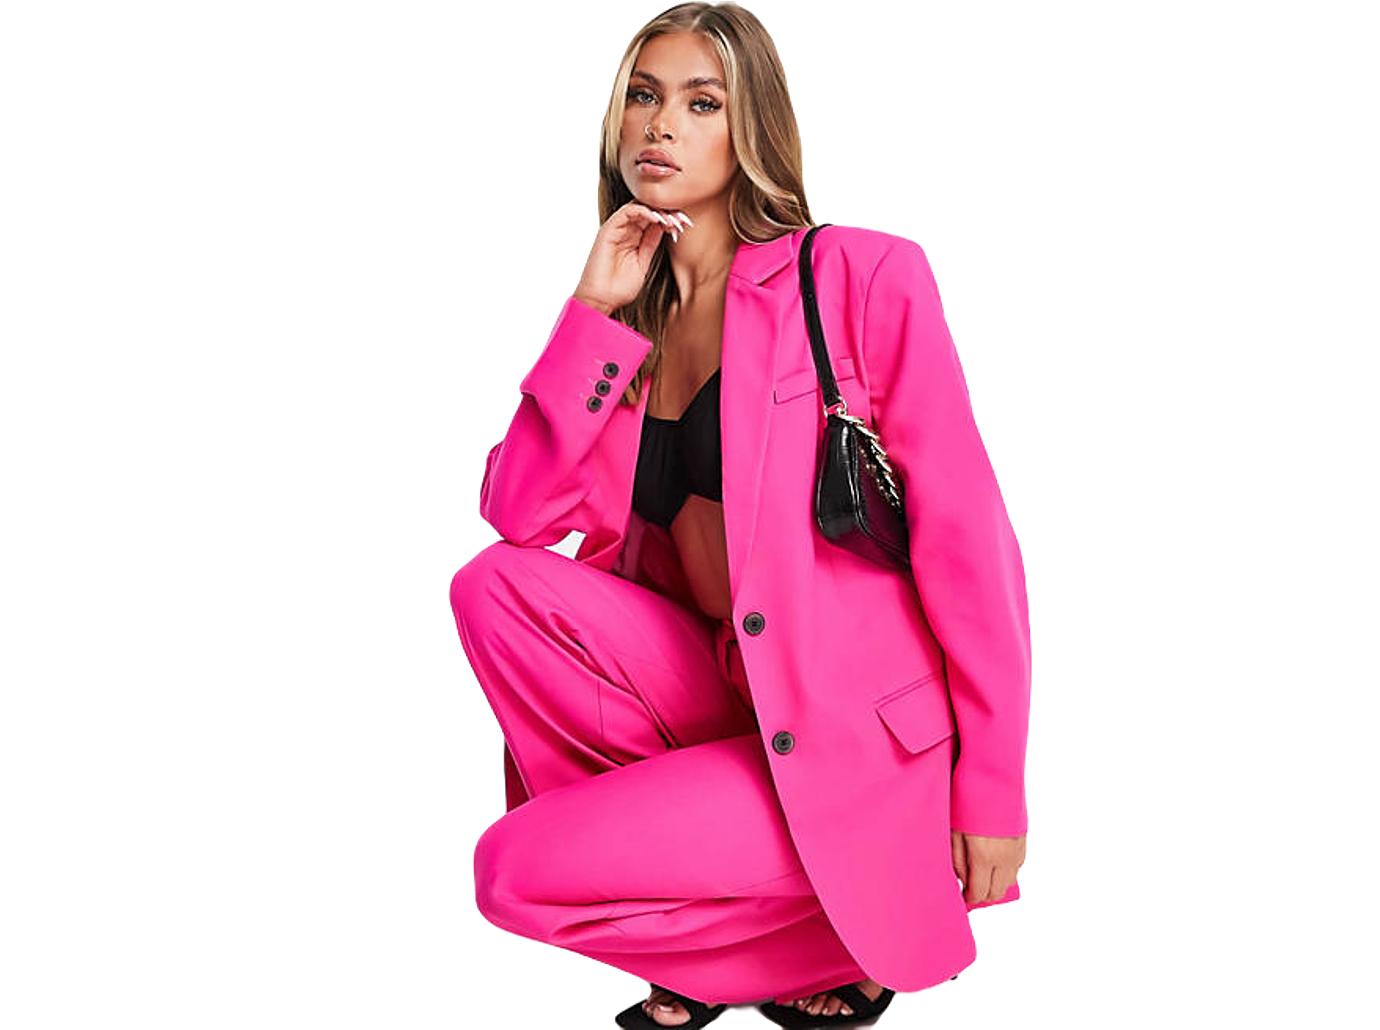 Heidi Klum Styles Stunning Pink Pantsuit In Los Angeles